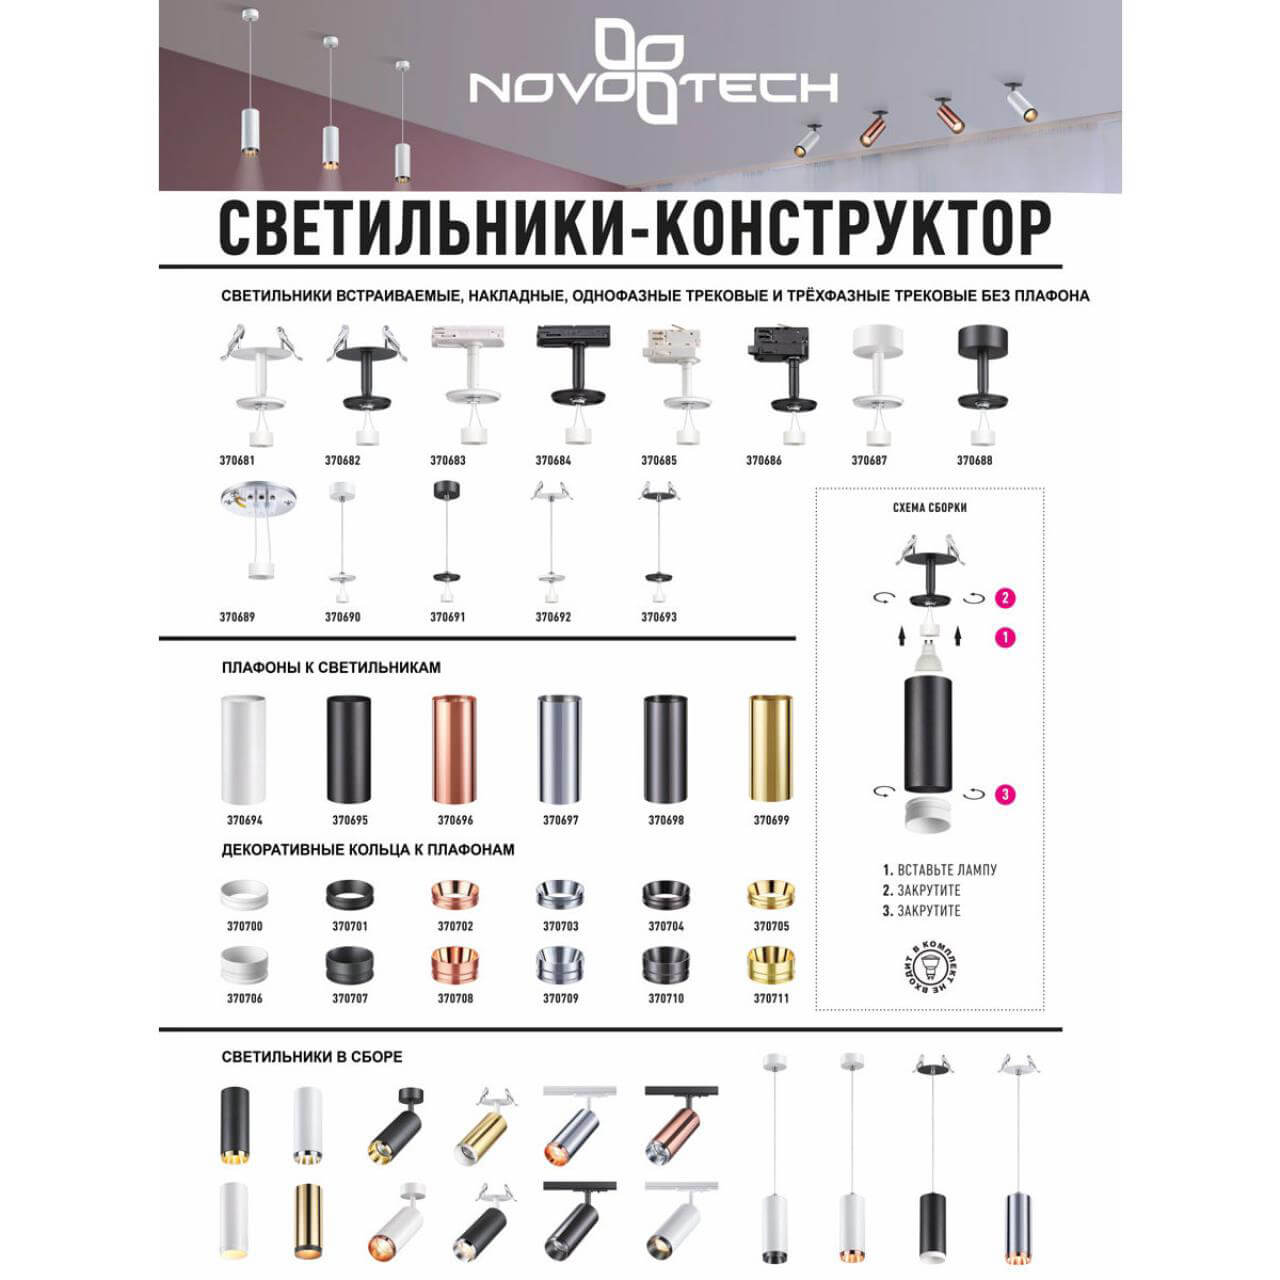 Кольцо декоративное Novotech UNITE 370701 в Москве